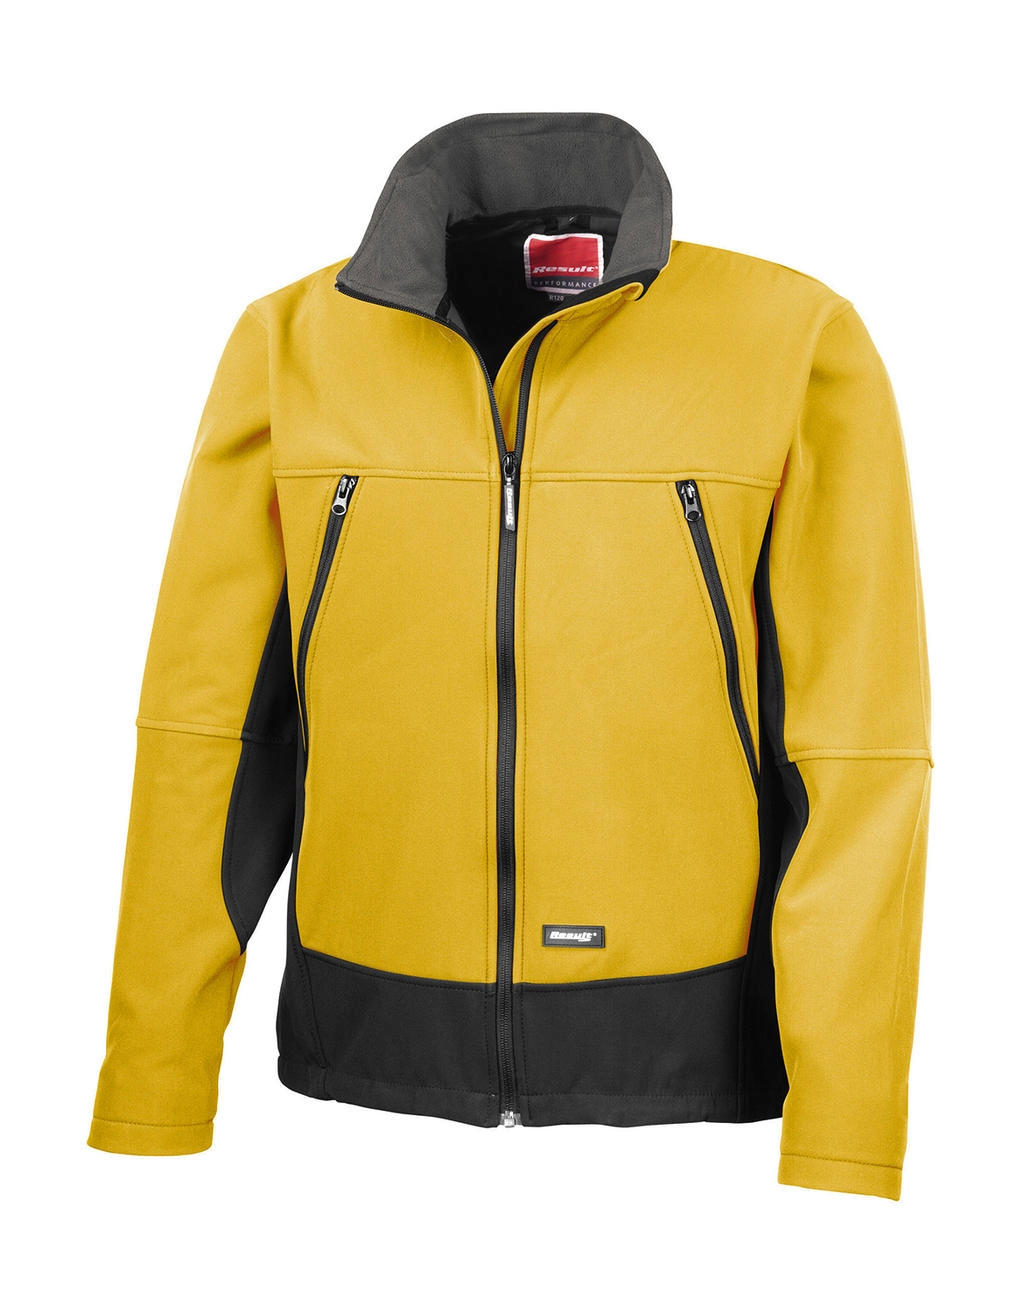 Softshell Activity Jacket zum Besticken und Bedrucken in der Farbe Sport Yellow/Black mit Ihren Logo, Schriftzug oder Motiv.